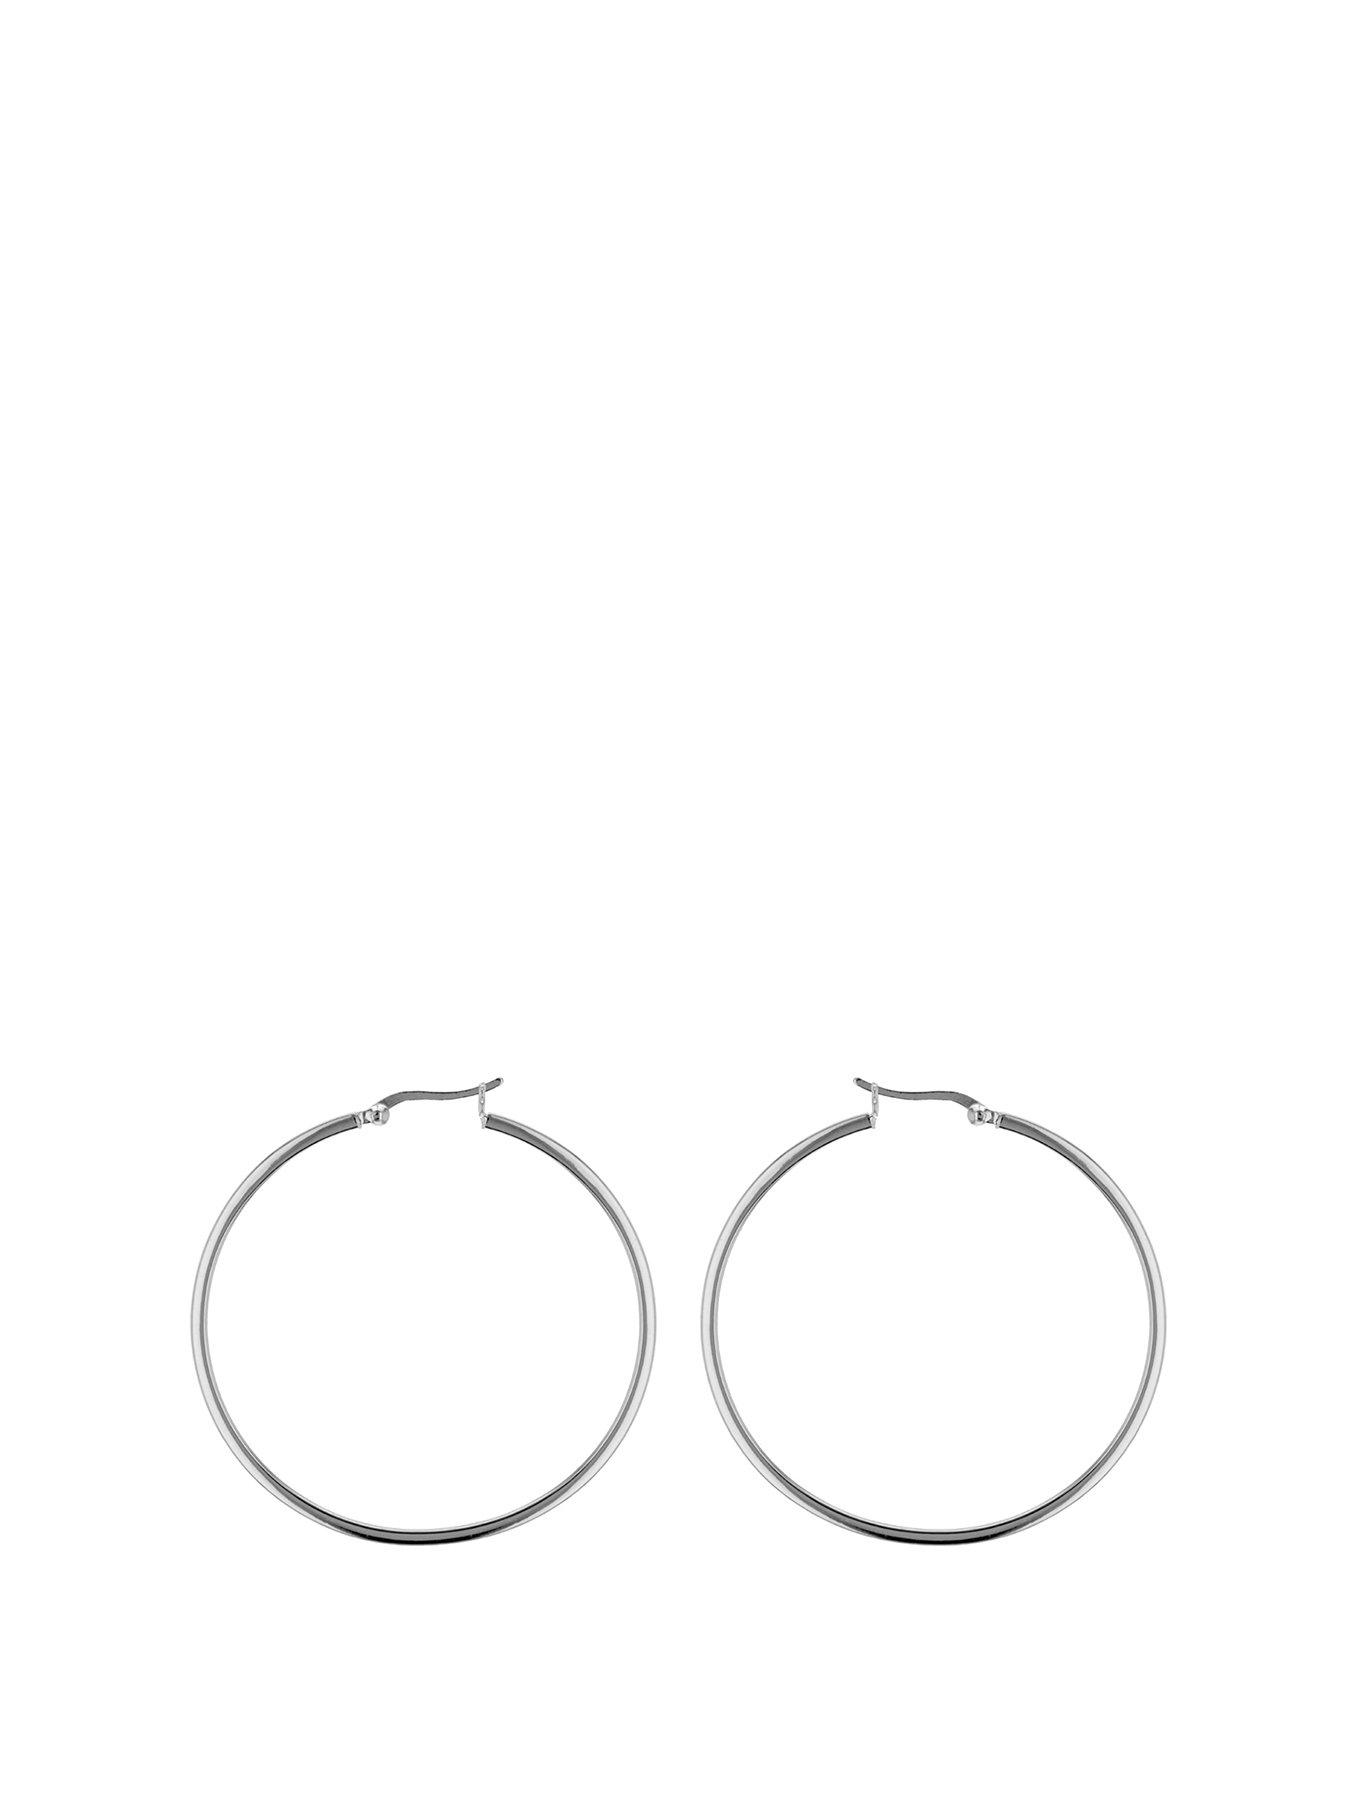  Sterling Silver 50mm Square Tube Hoop Earrings